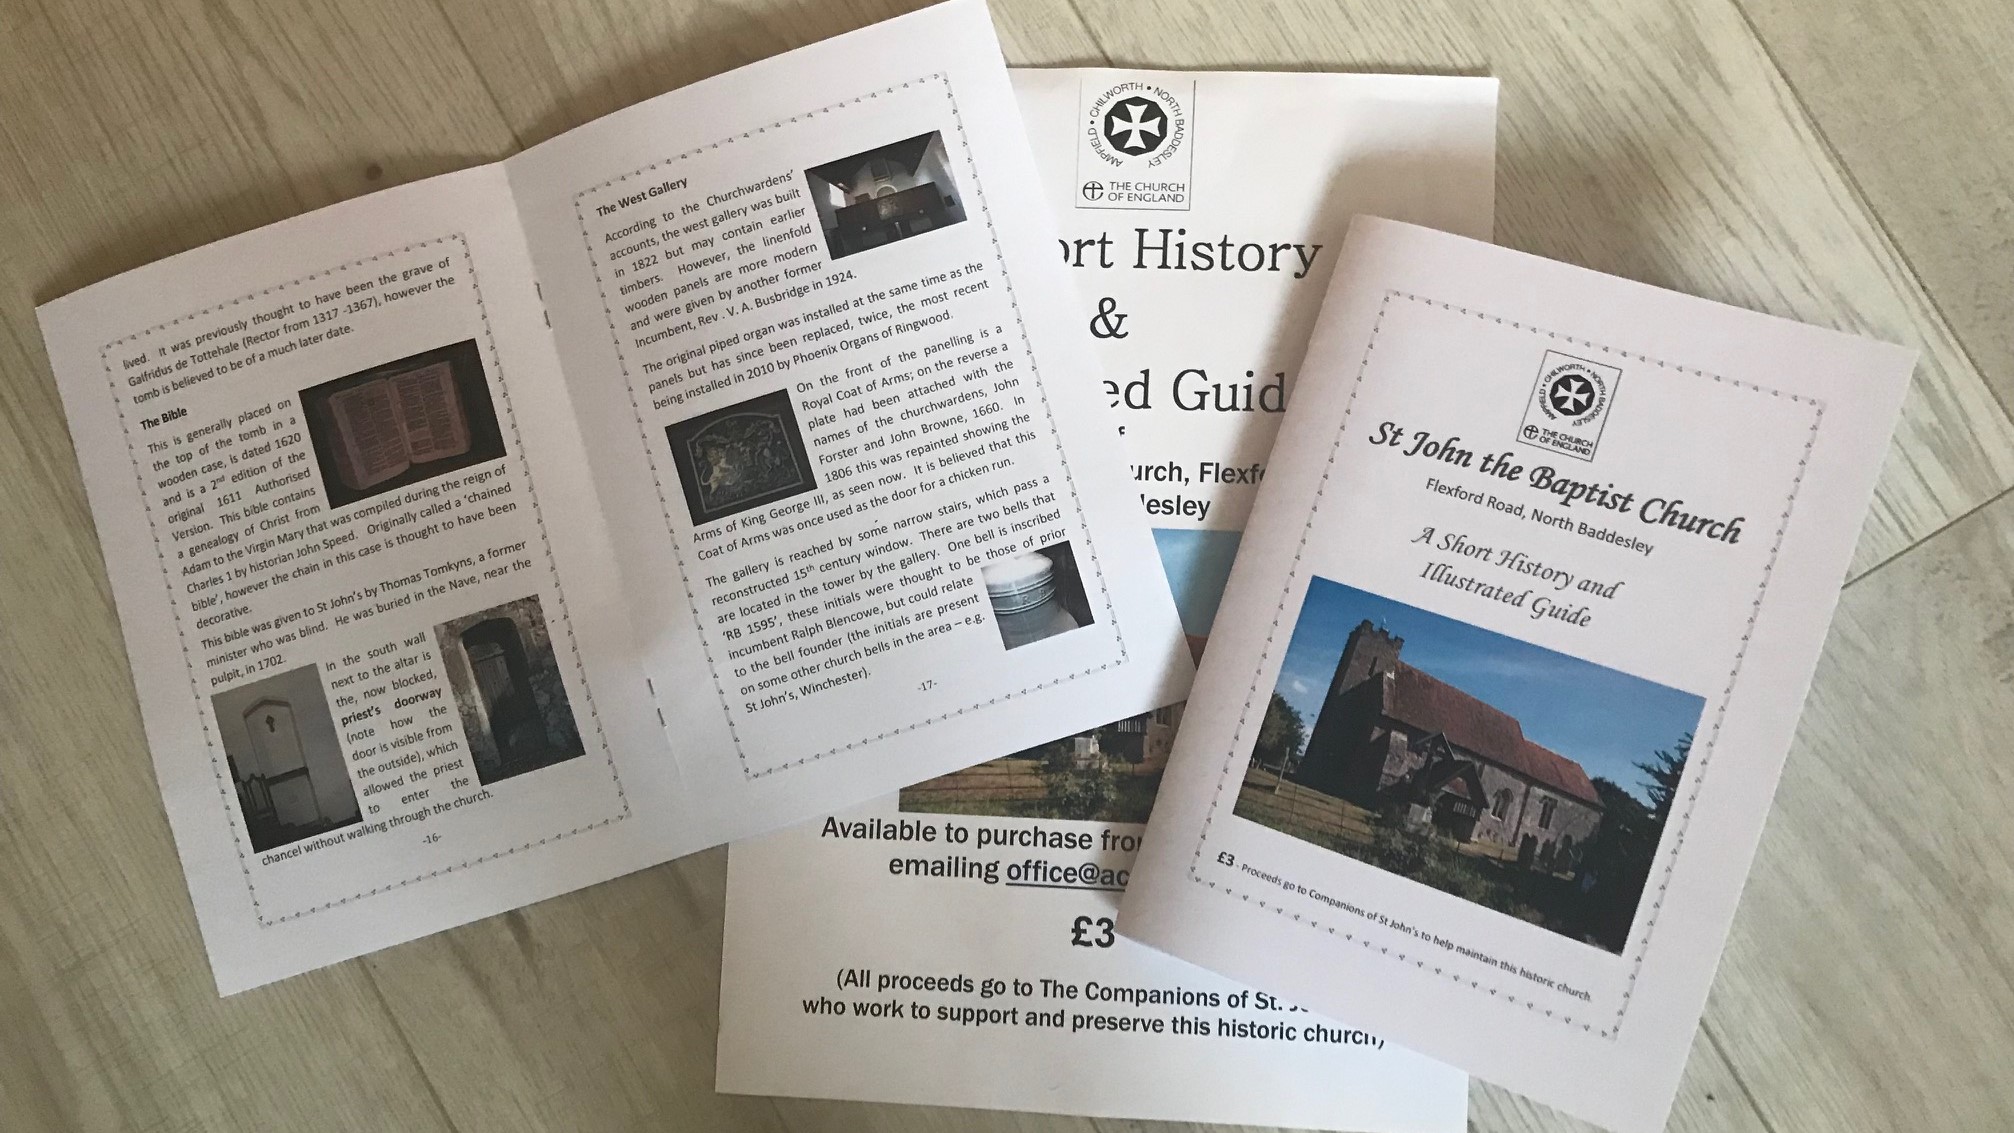 New guide books for St John's